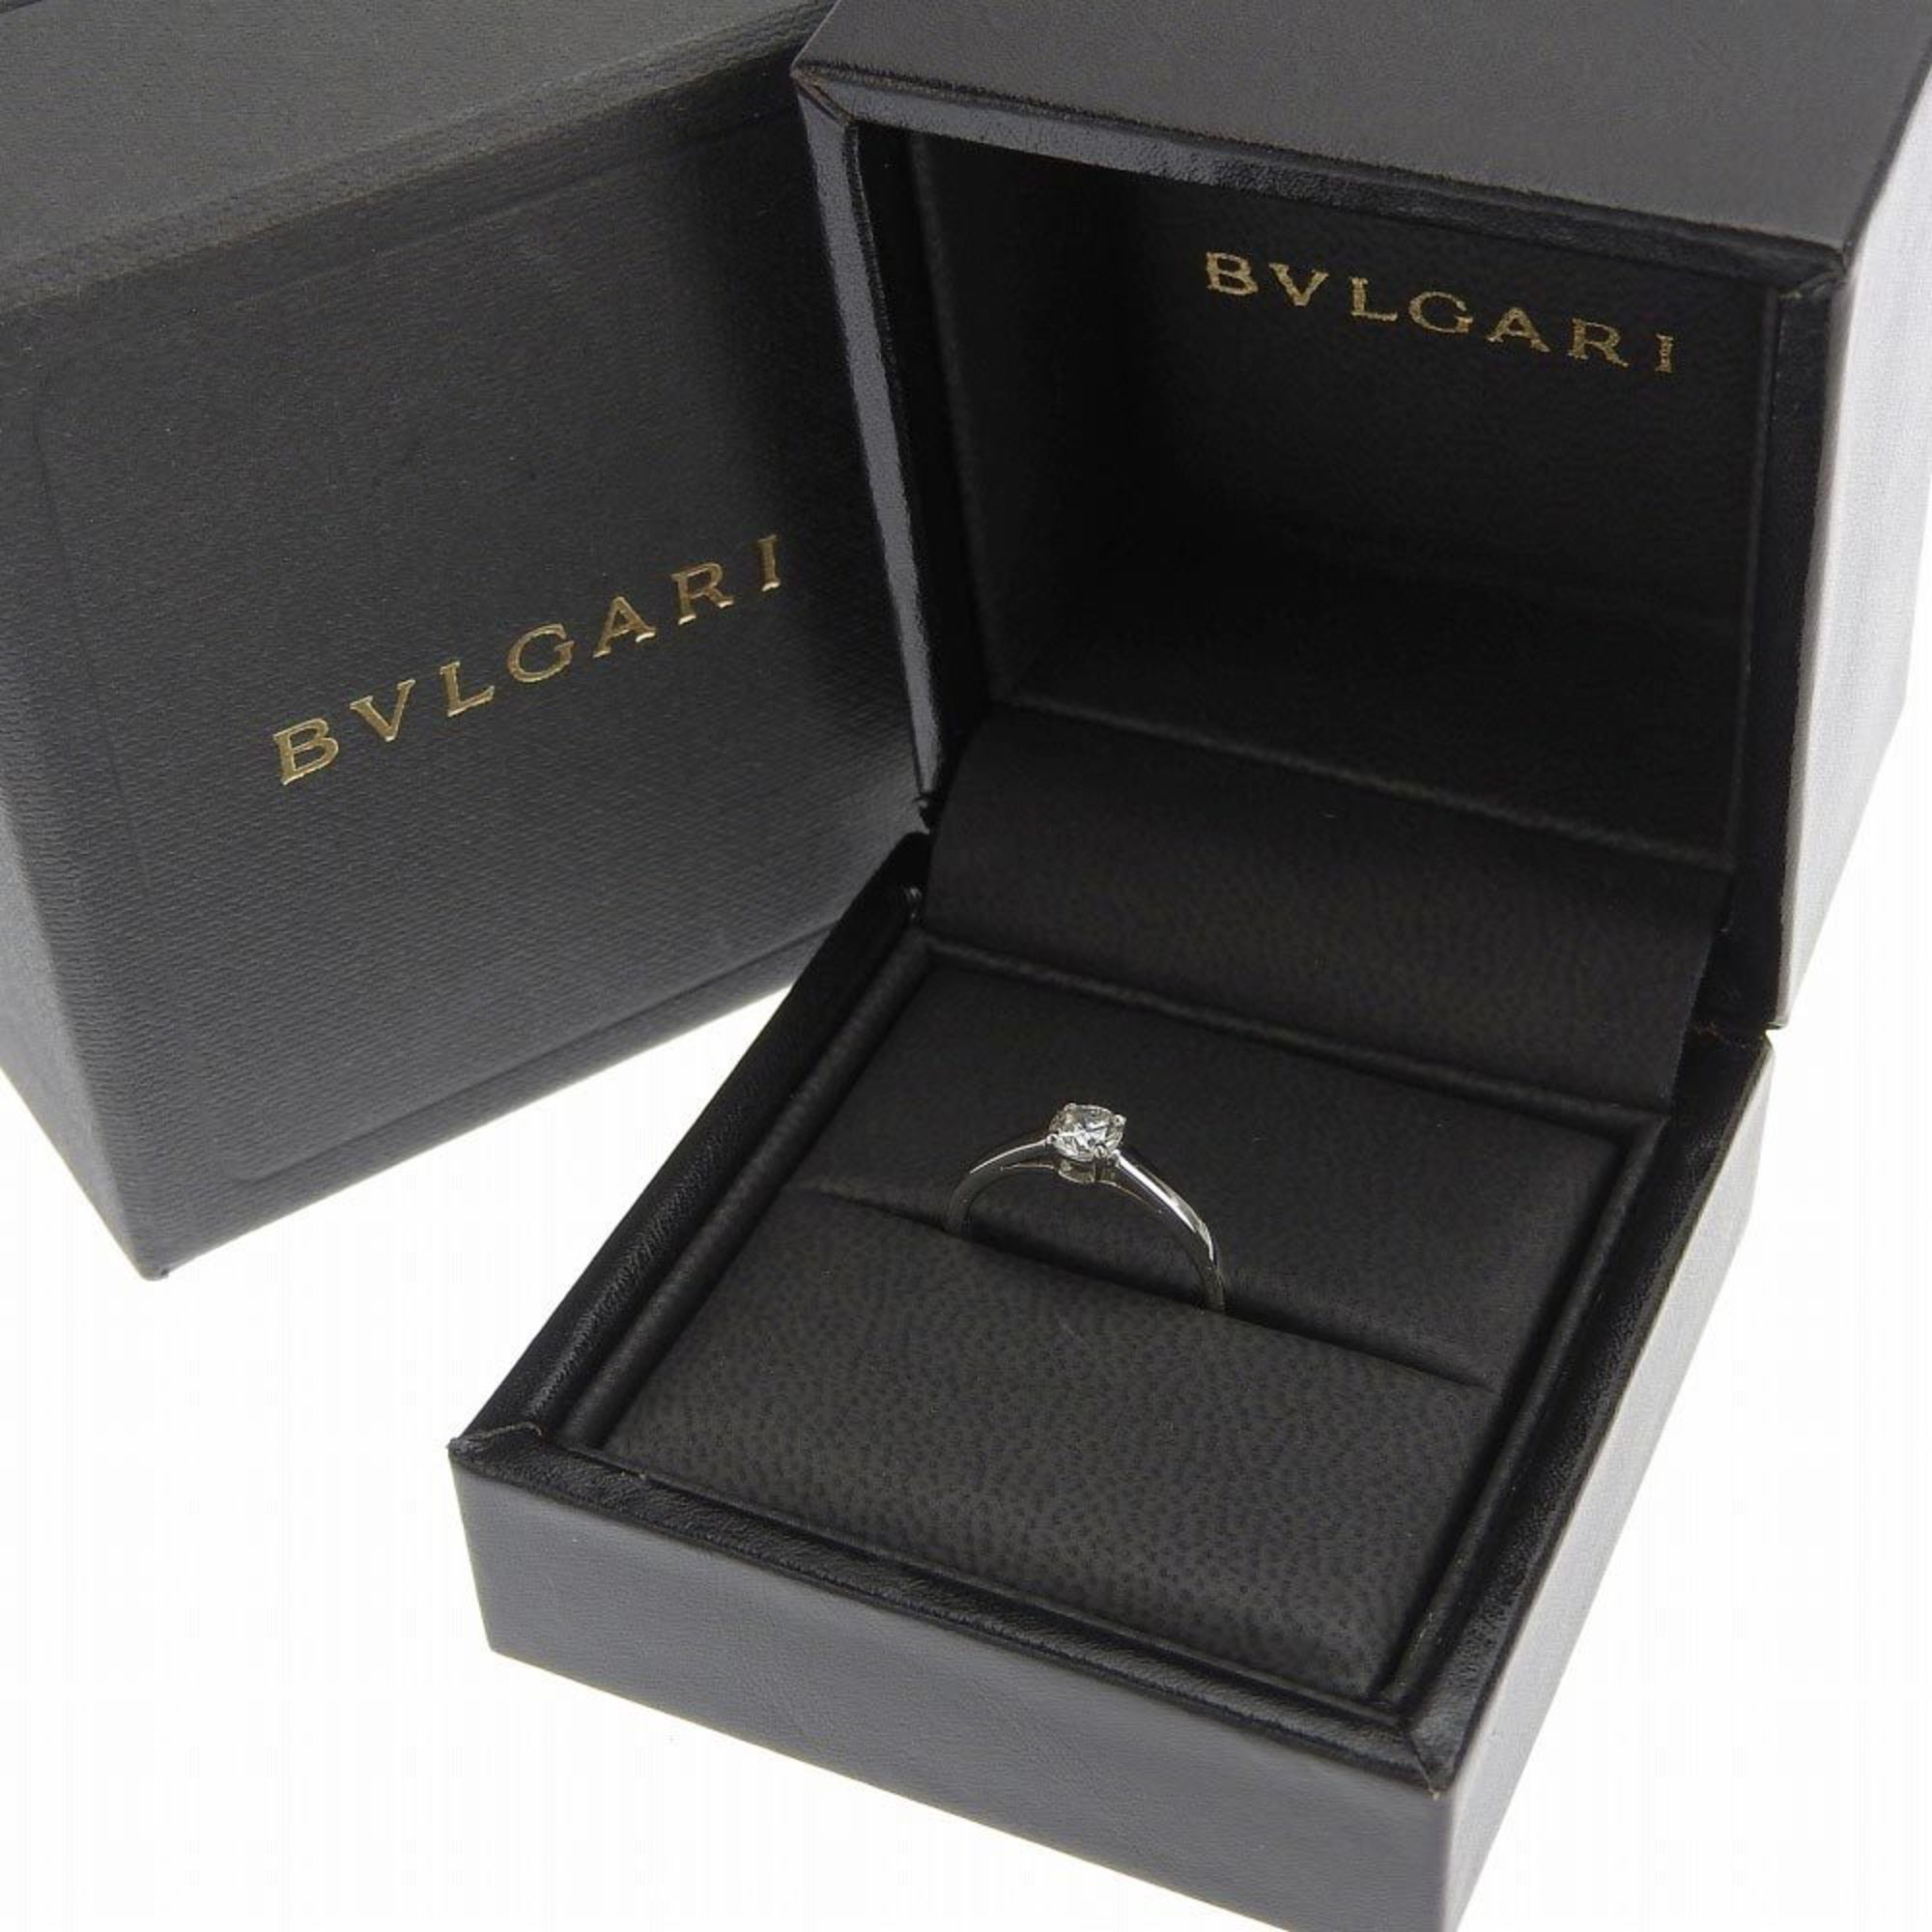 Bvlgari BVLGARI glyph solitaire marriage ring engagement Pt950 diamond 8.5